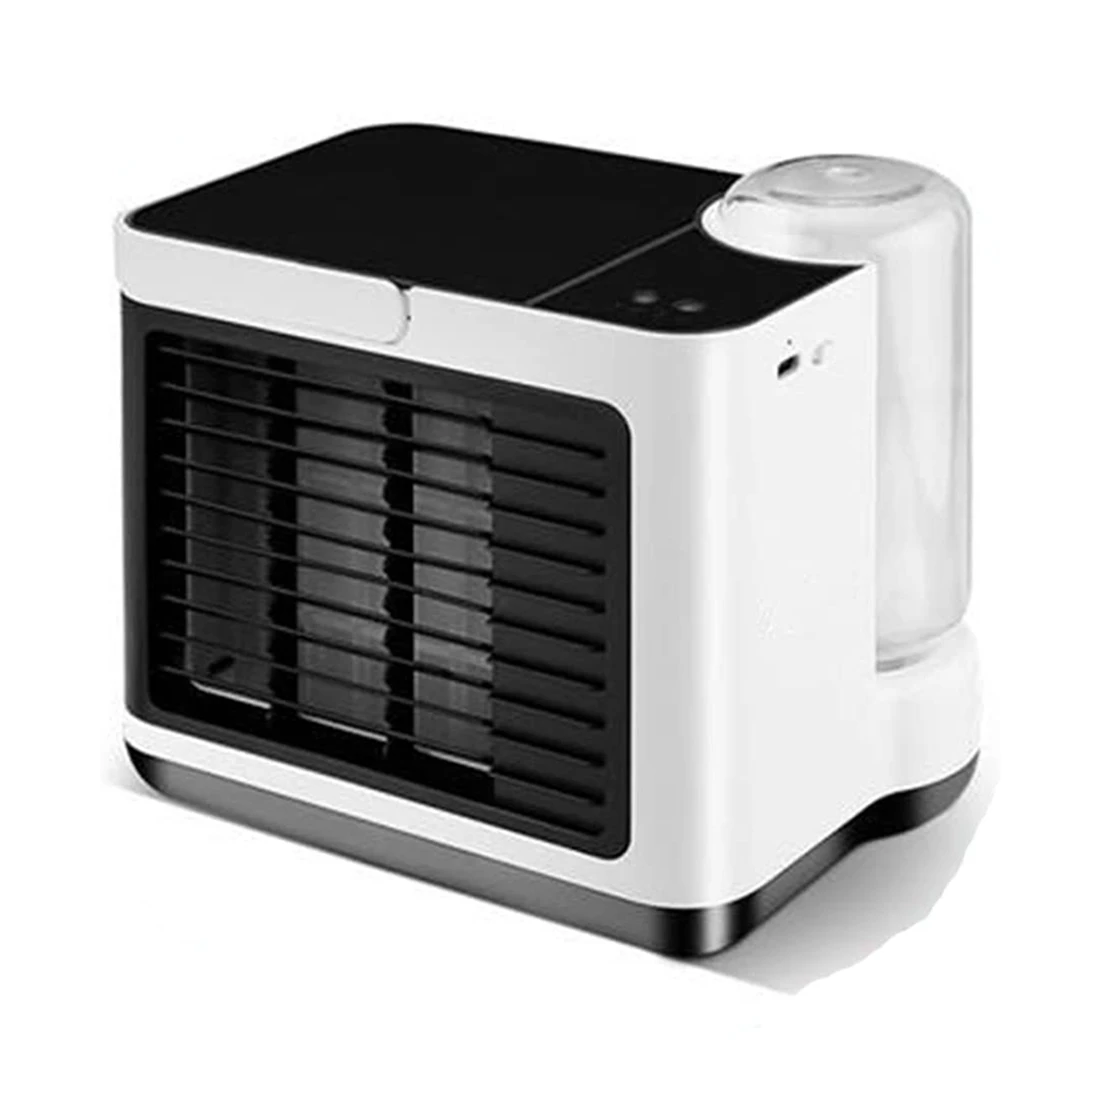 

Портативный вентилятор для кондиционирования воздуха, мини-кондиционер с 3 скоростями, очиститель, увлажнитель воздуха, настольный USB-вентилятор для охлаждения воздуха, охладитель воздуха